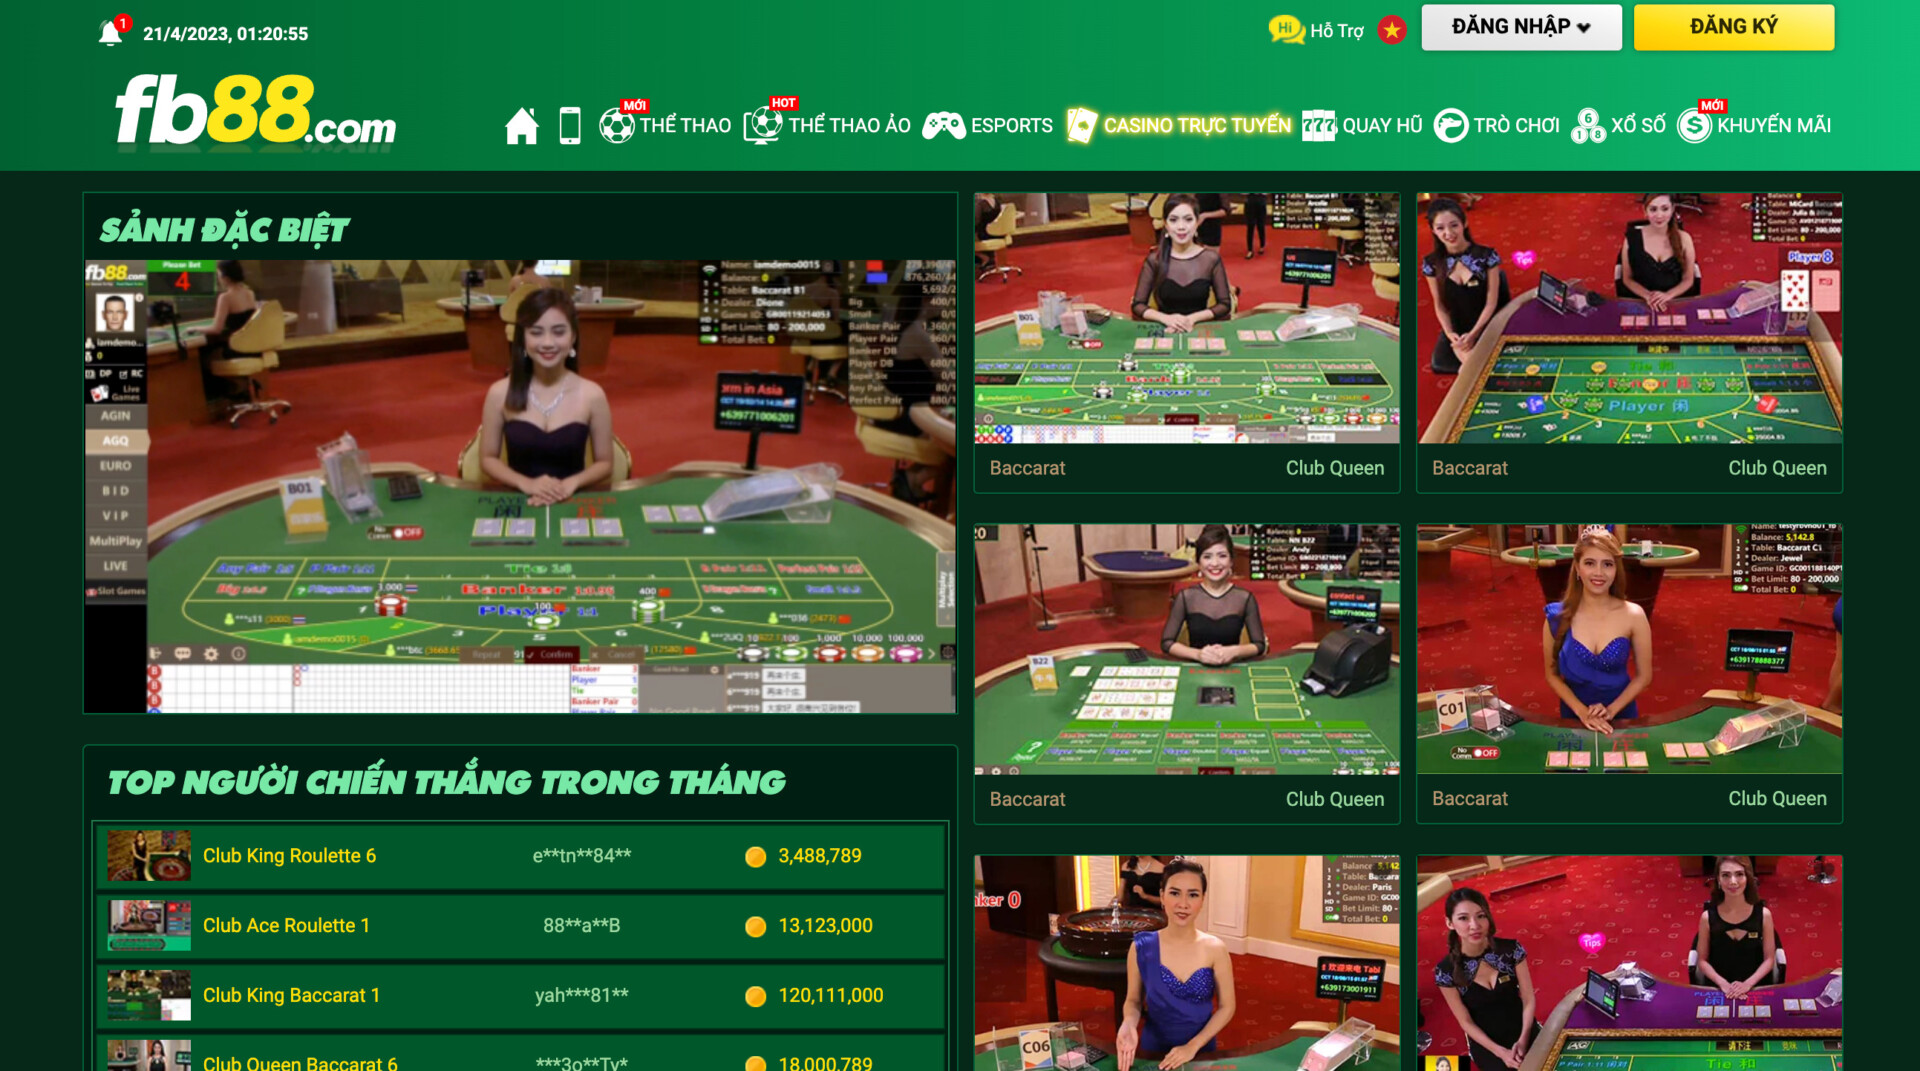 Casino trực tuyến chính là chuỗi game được đông đảo tay chơi săn đón tại 88bet1